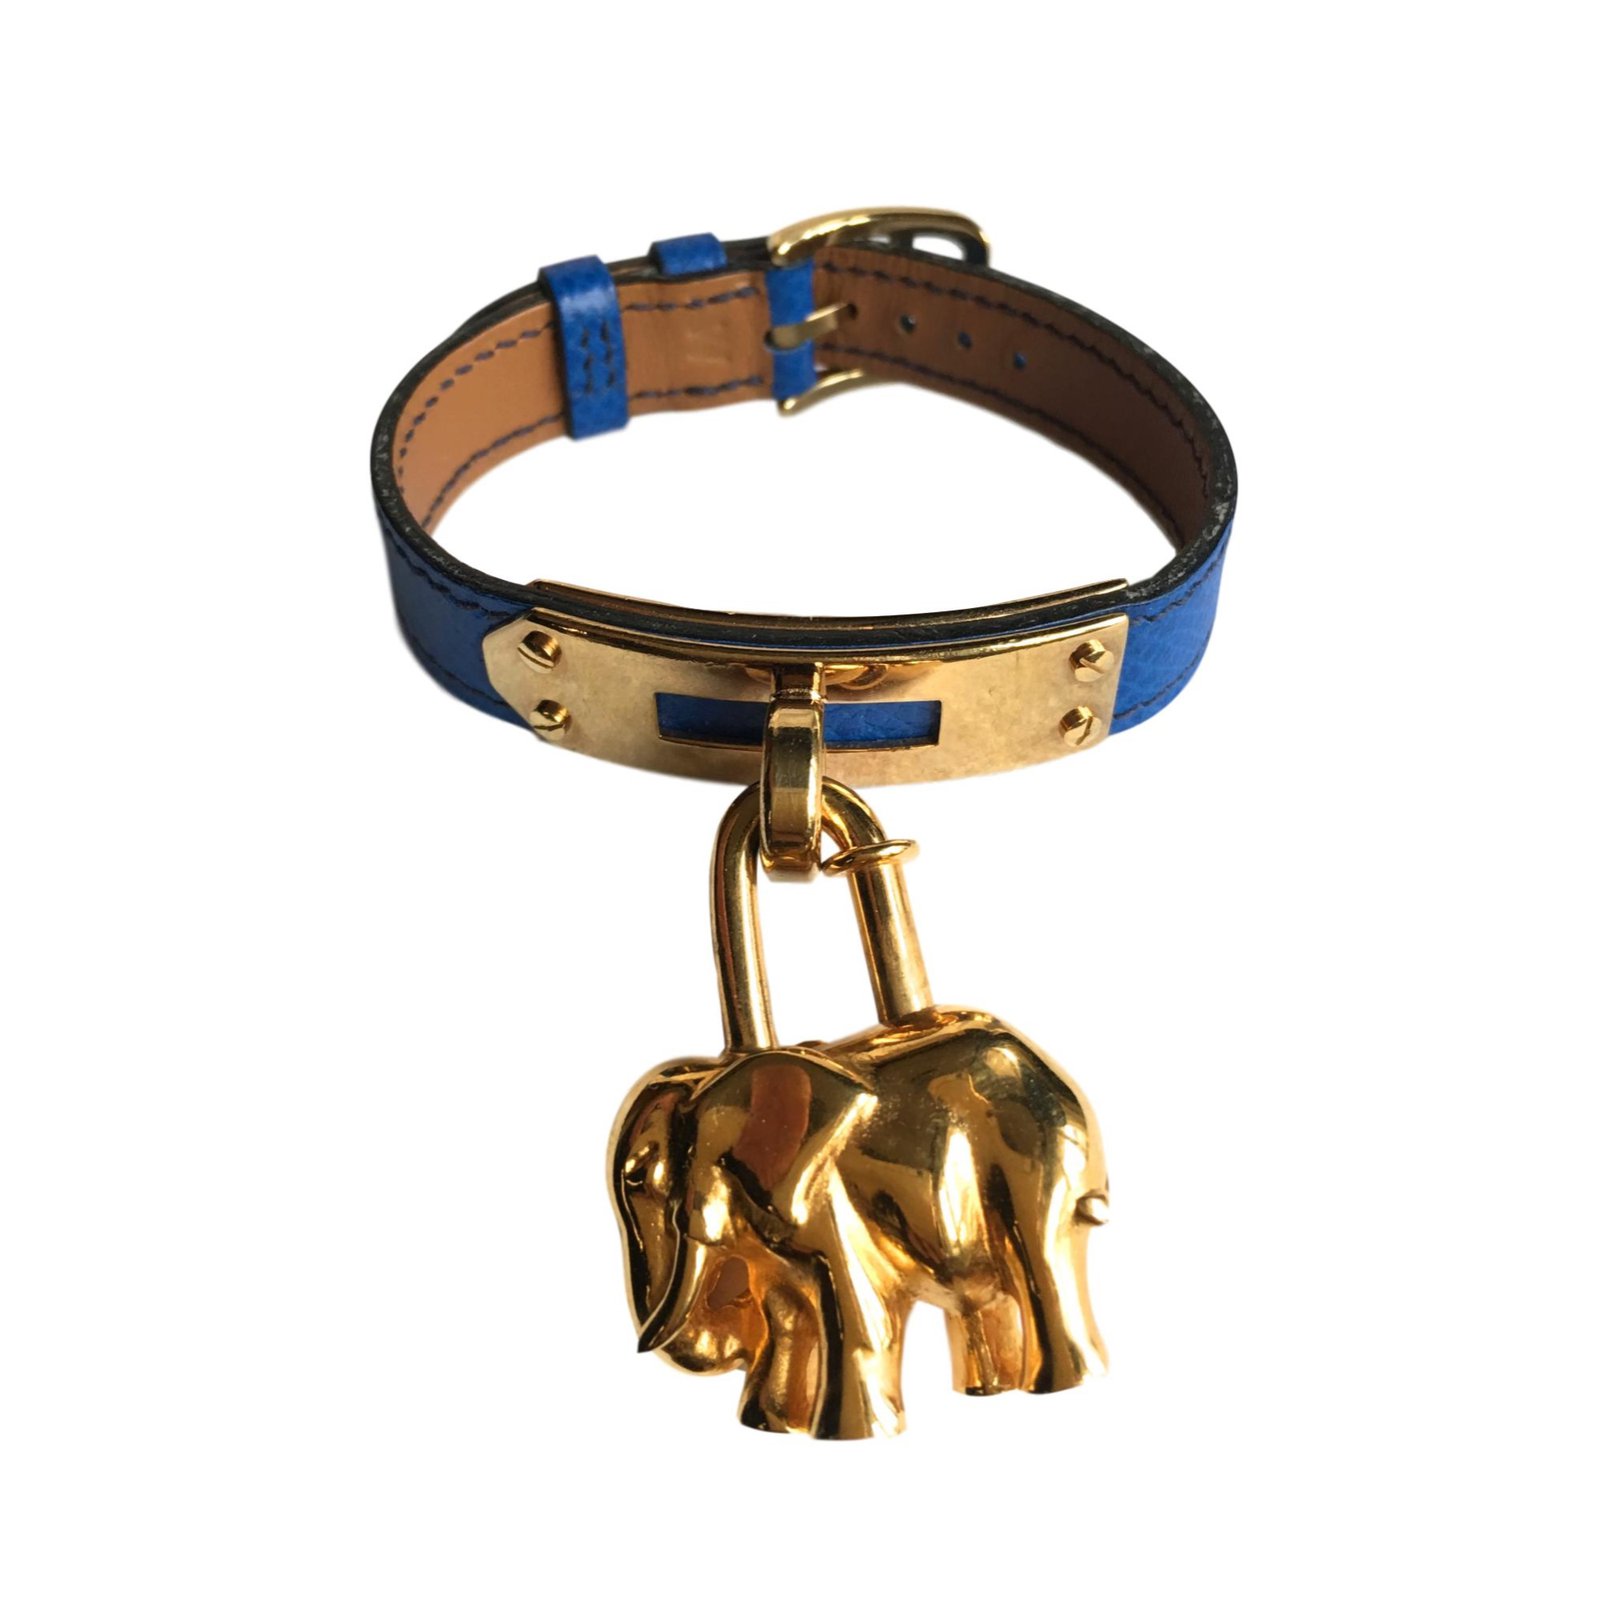 hermes elephant bracelet